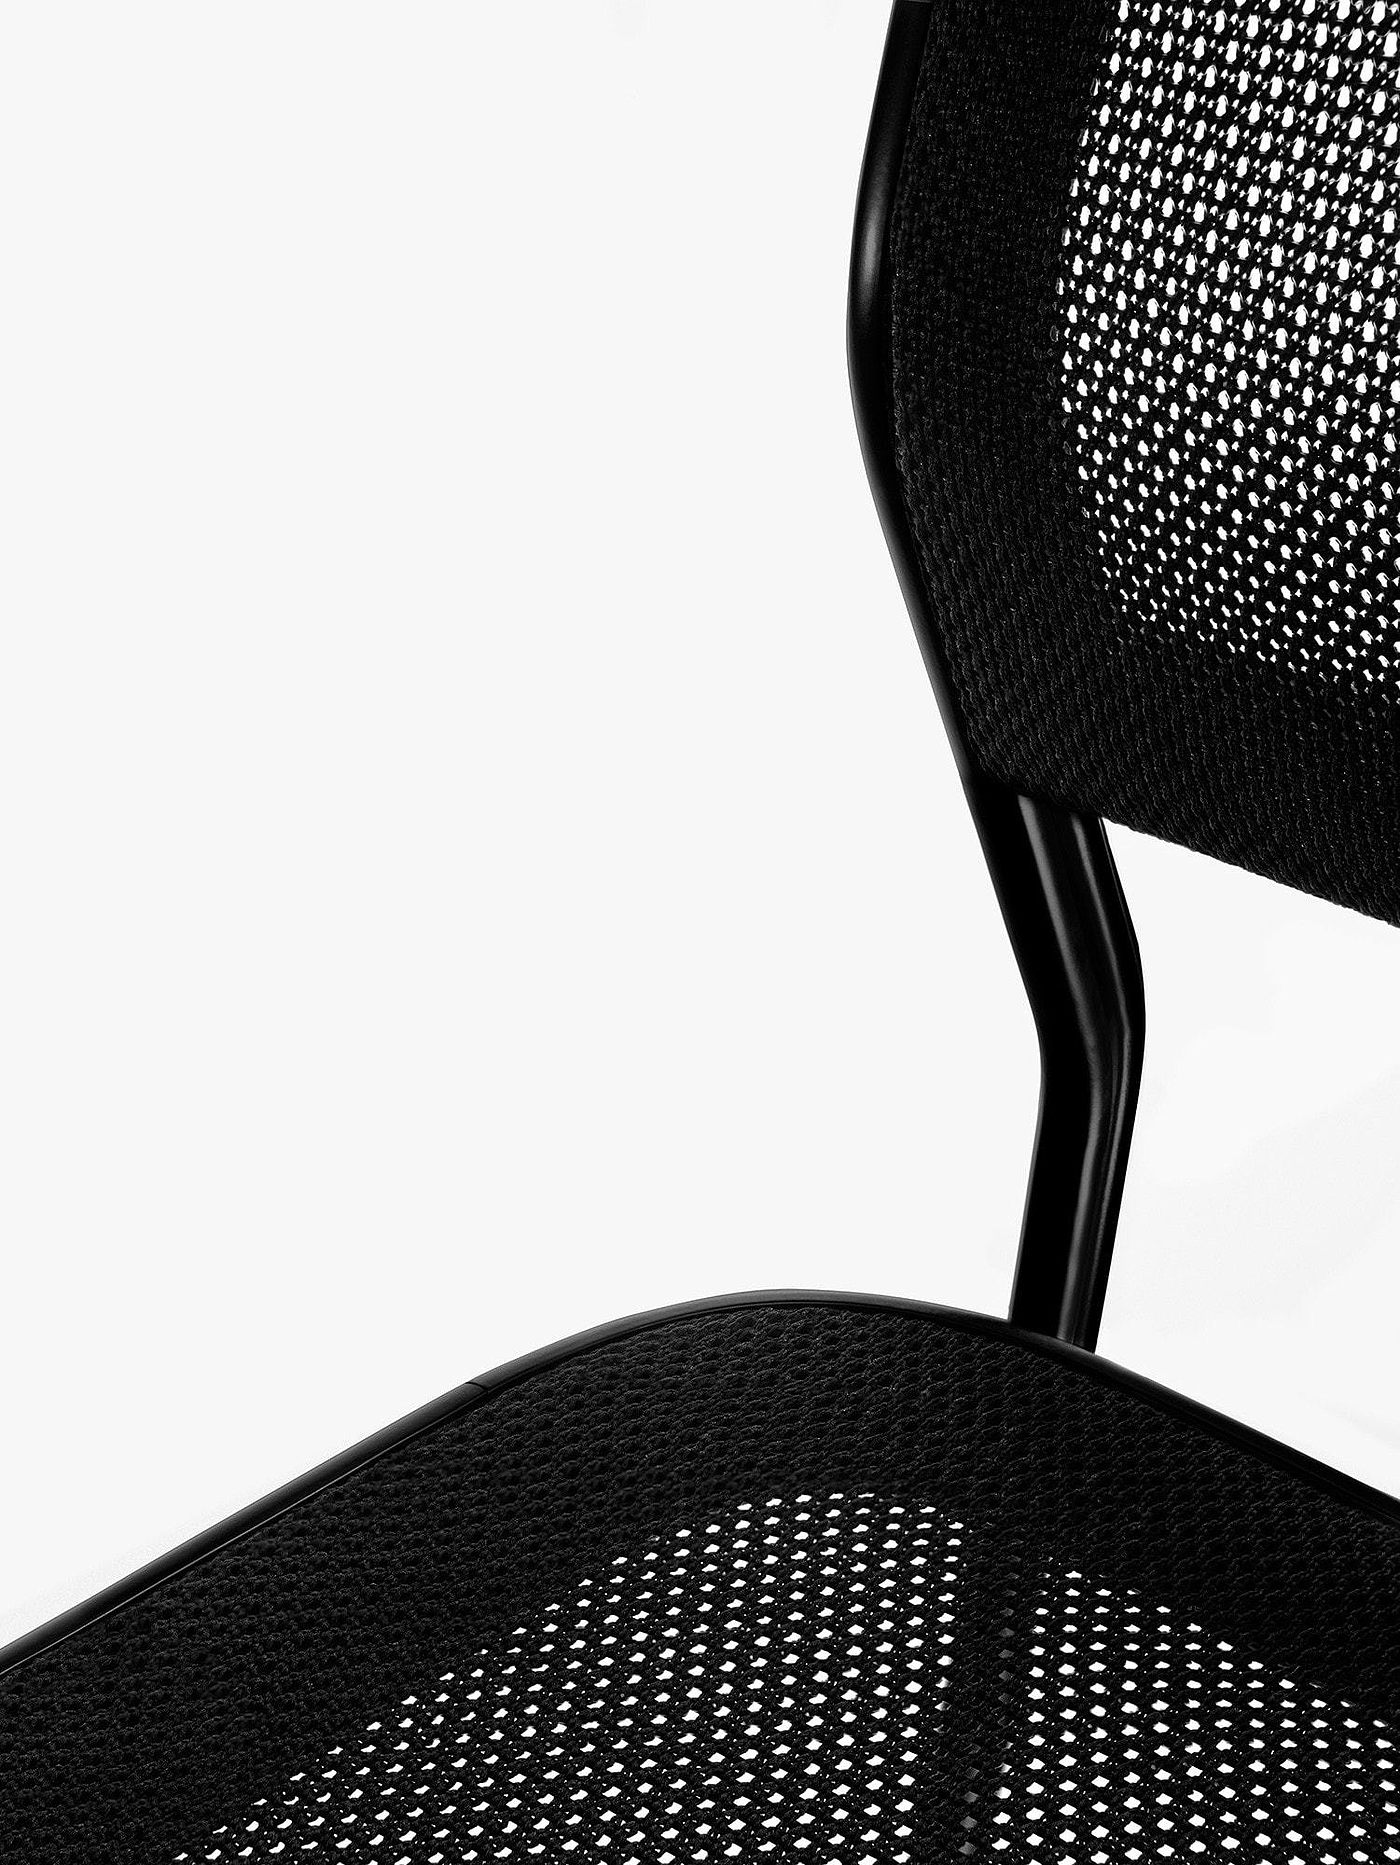 椅子，创新现代设计，黑色，白色，简洁，工业设计，产品设计，